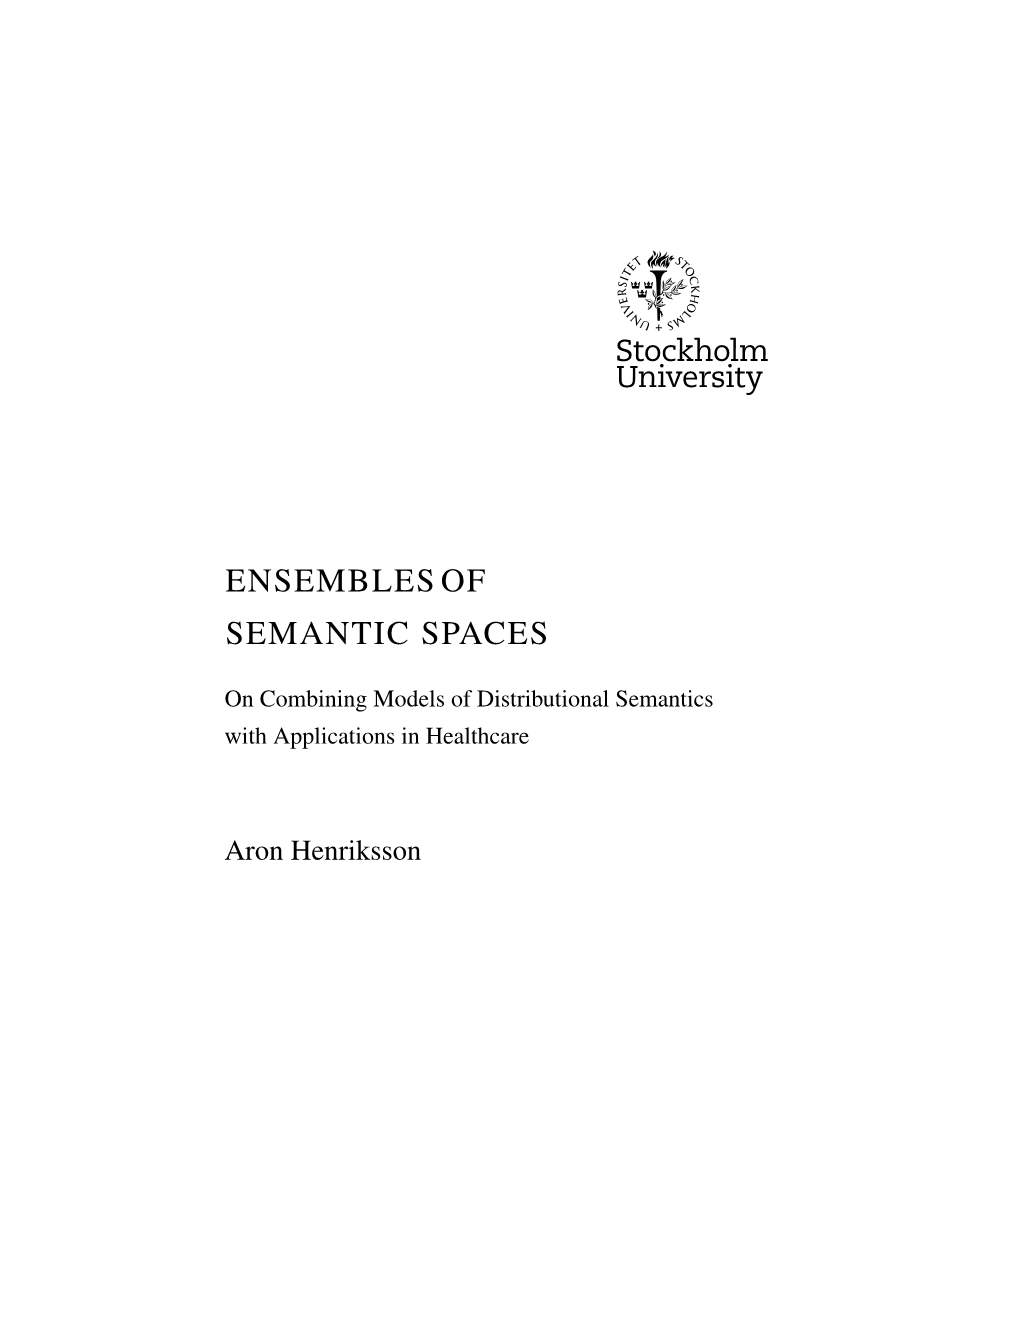 Ensembles of Semantic Spaces